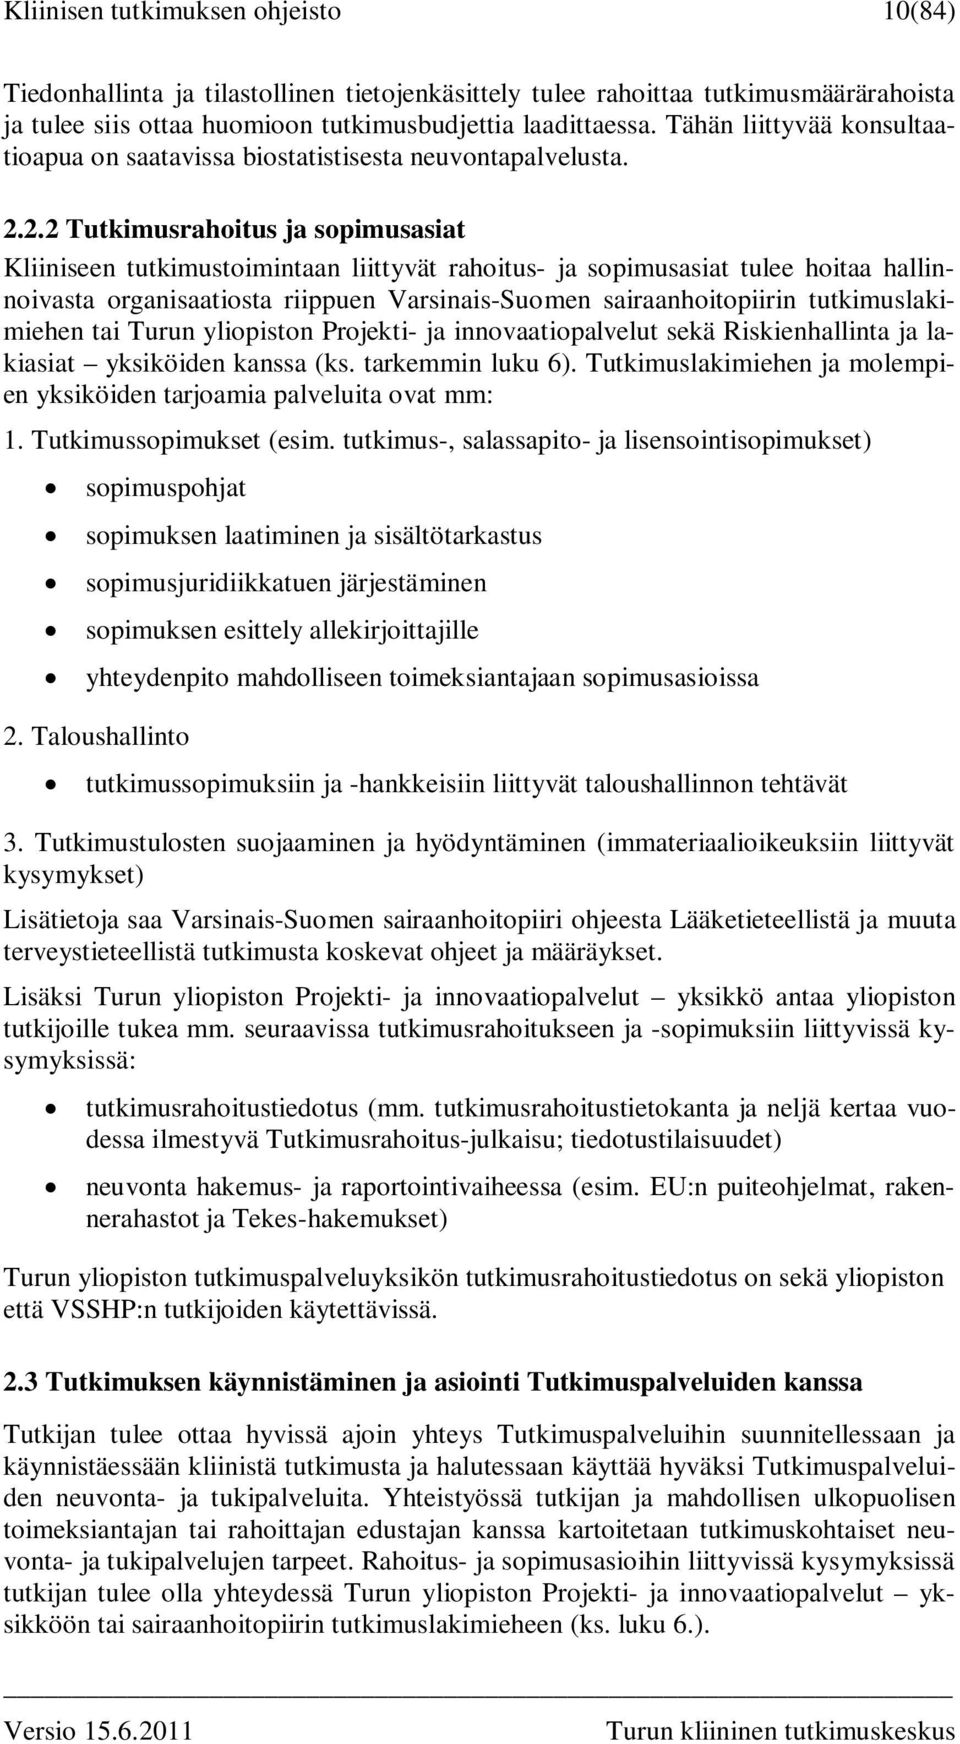 2.2 Tutkimusrahoitus ja sopimusasiat Kliiniseen tutkimustoimintaan liittyvät rahoitus- ja sopimusasiat tulee hoitaa hallinnoivasta organisaatiosta riippuen Varsinais-Suomen sairaanhoitopiirin